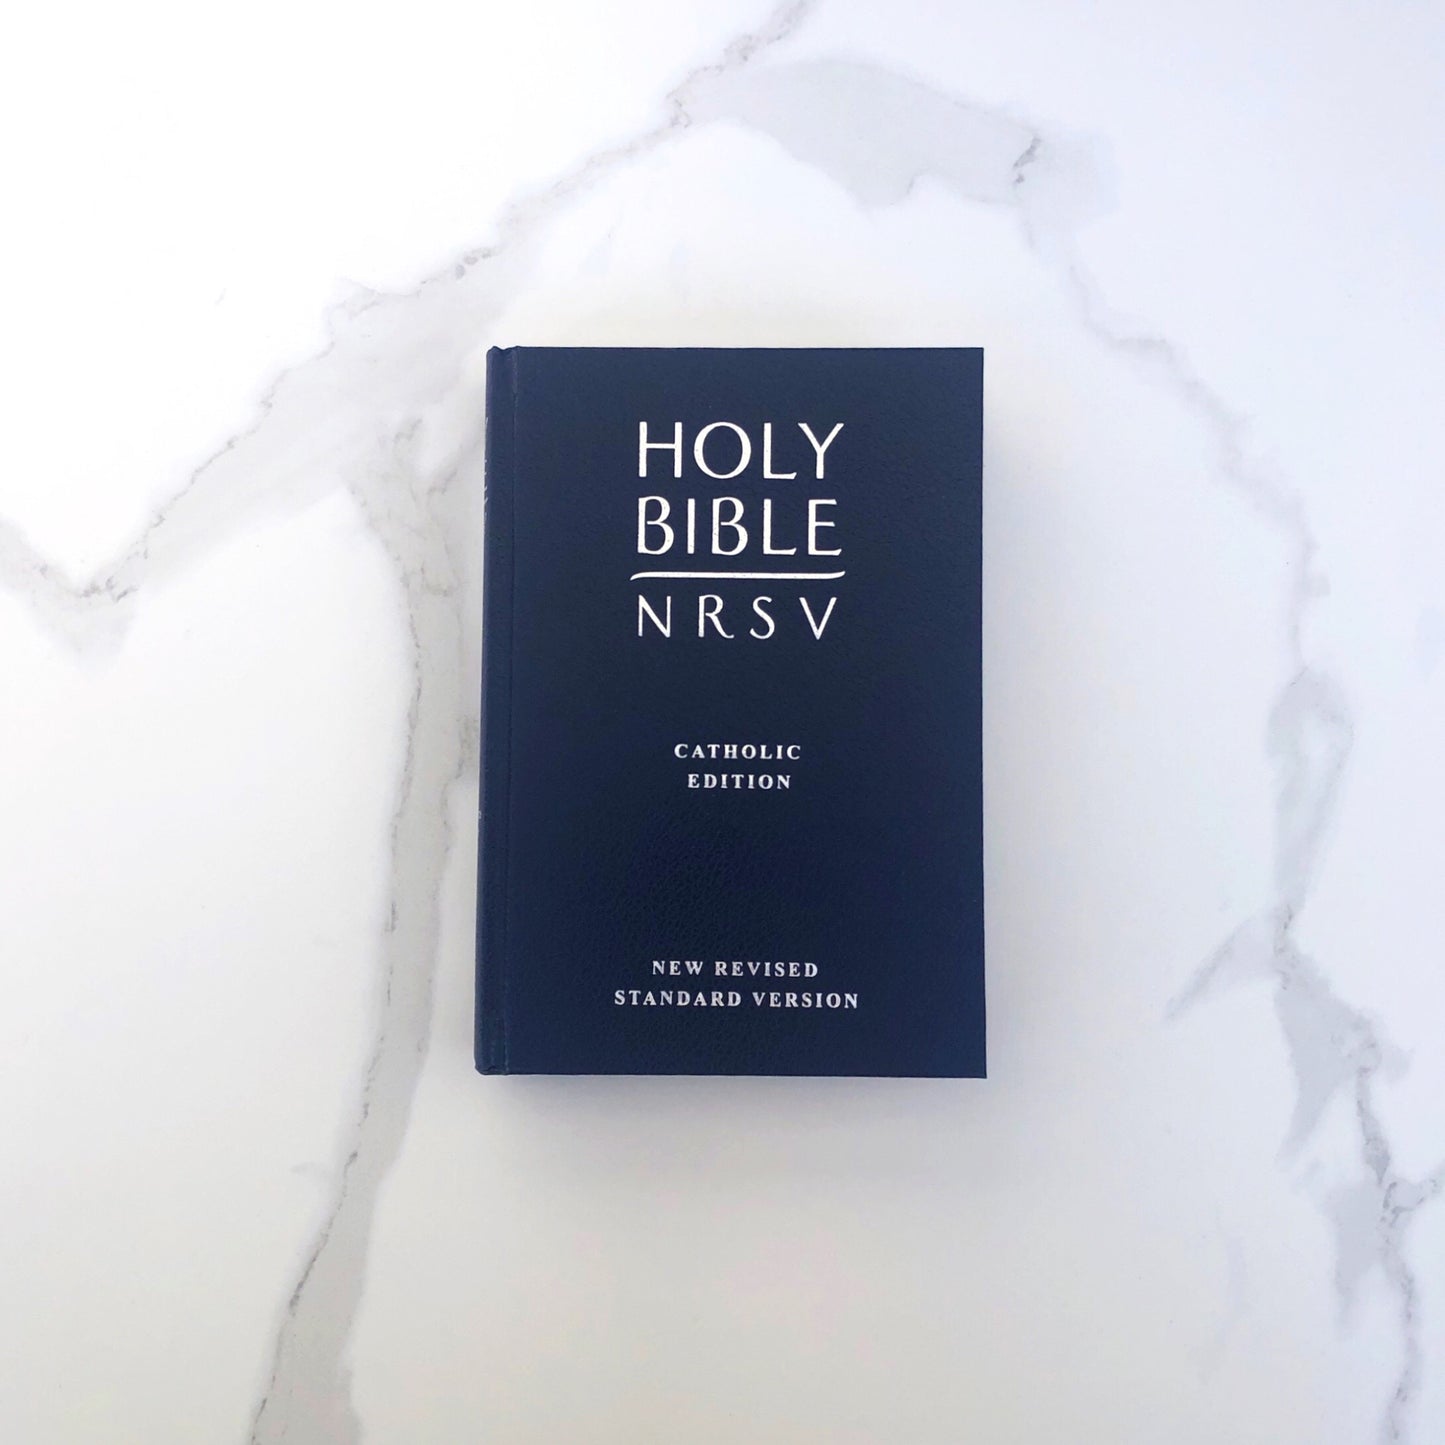 Holy Bible NRSV - Catholic Edition